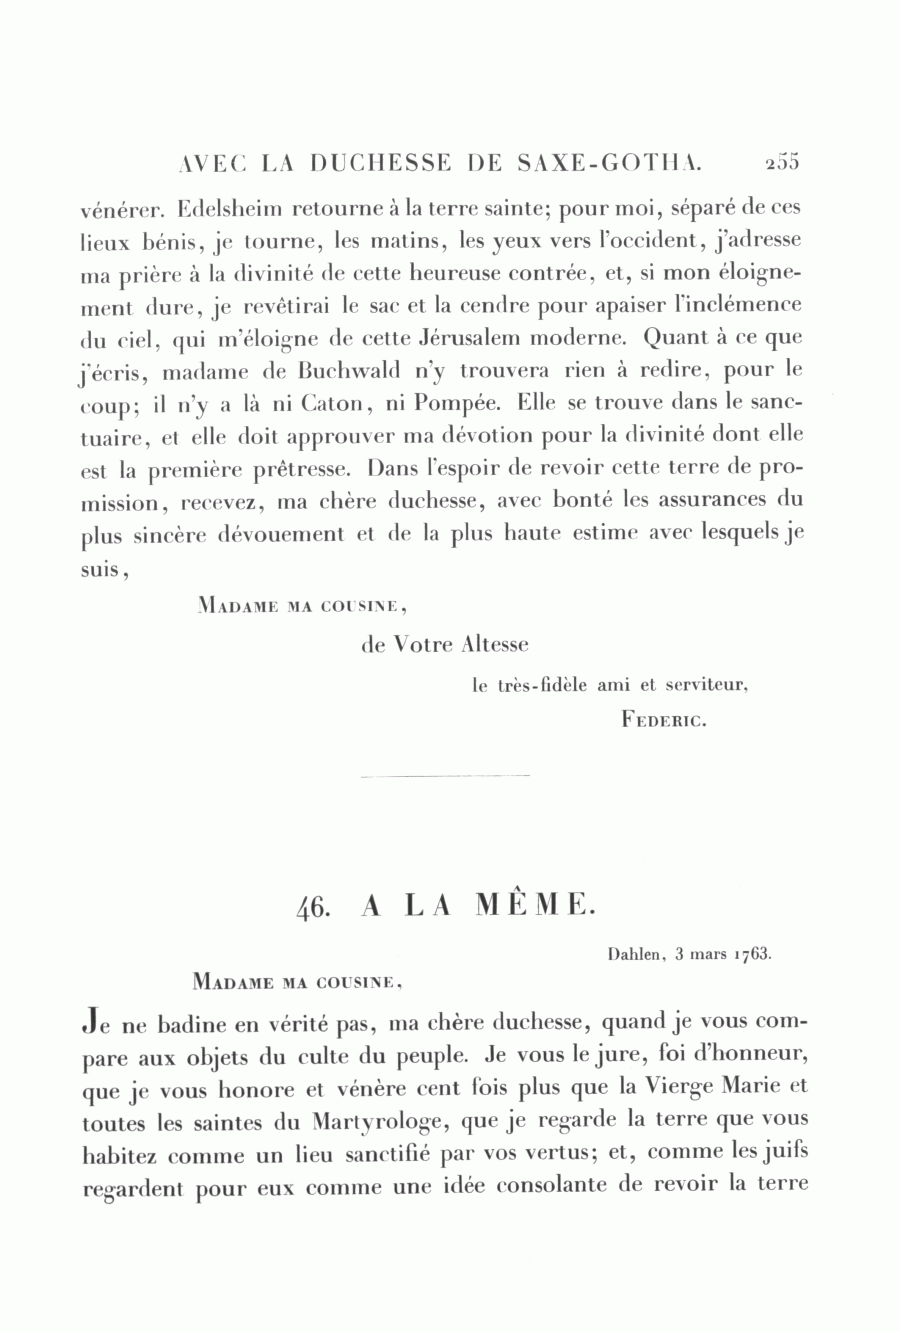 S. 255, Obj. 2